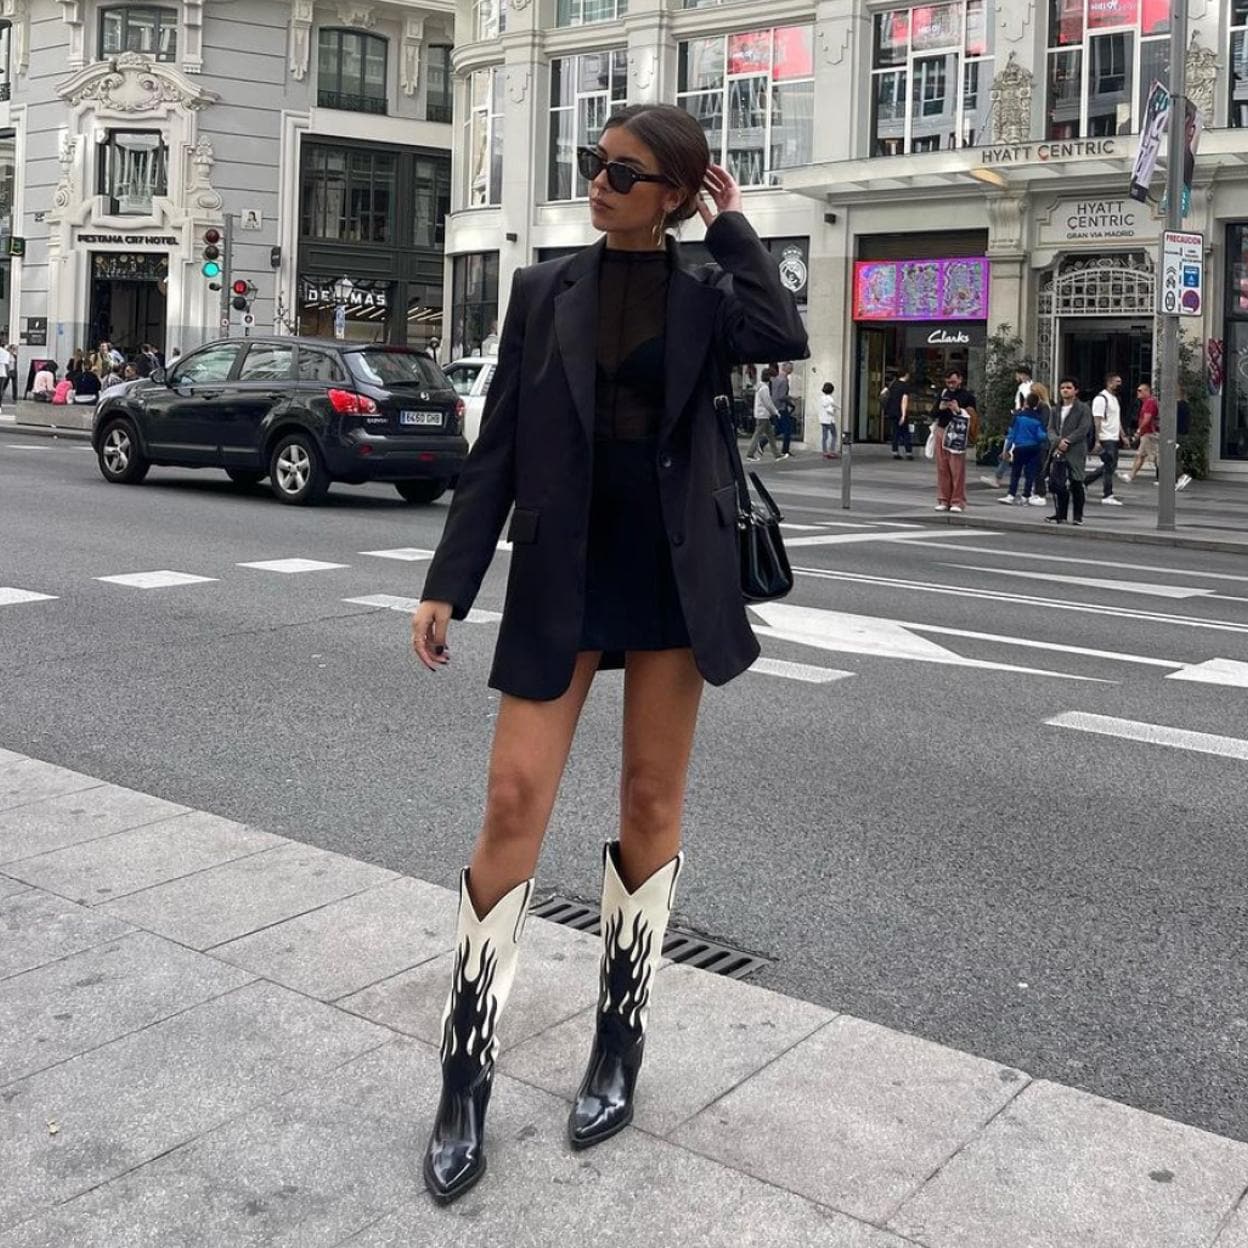 MODA: Las botas de Zara están causando furor en Instagram | Mujer Hoy